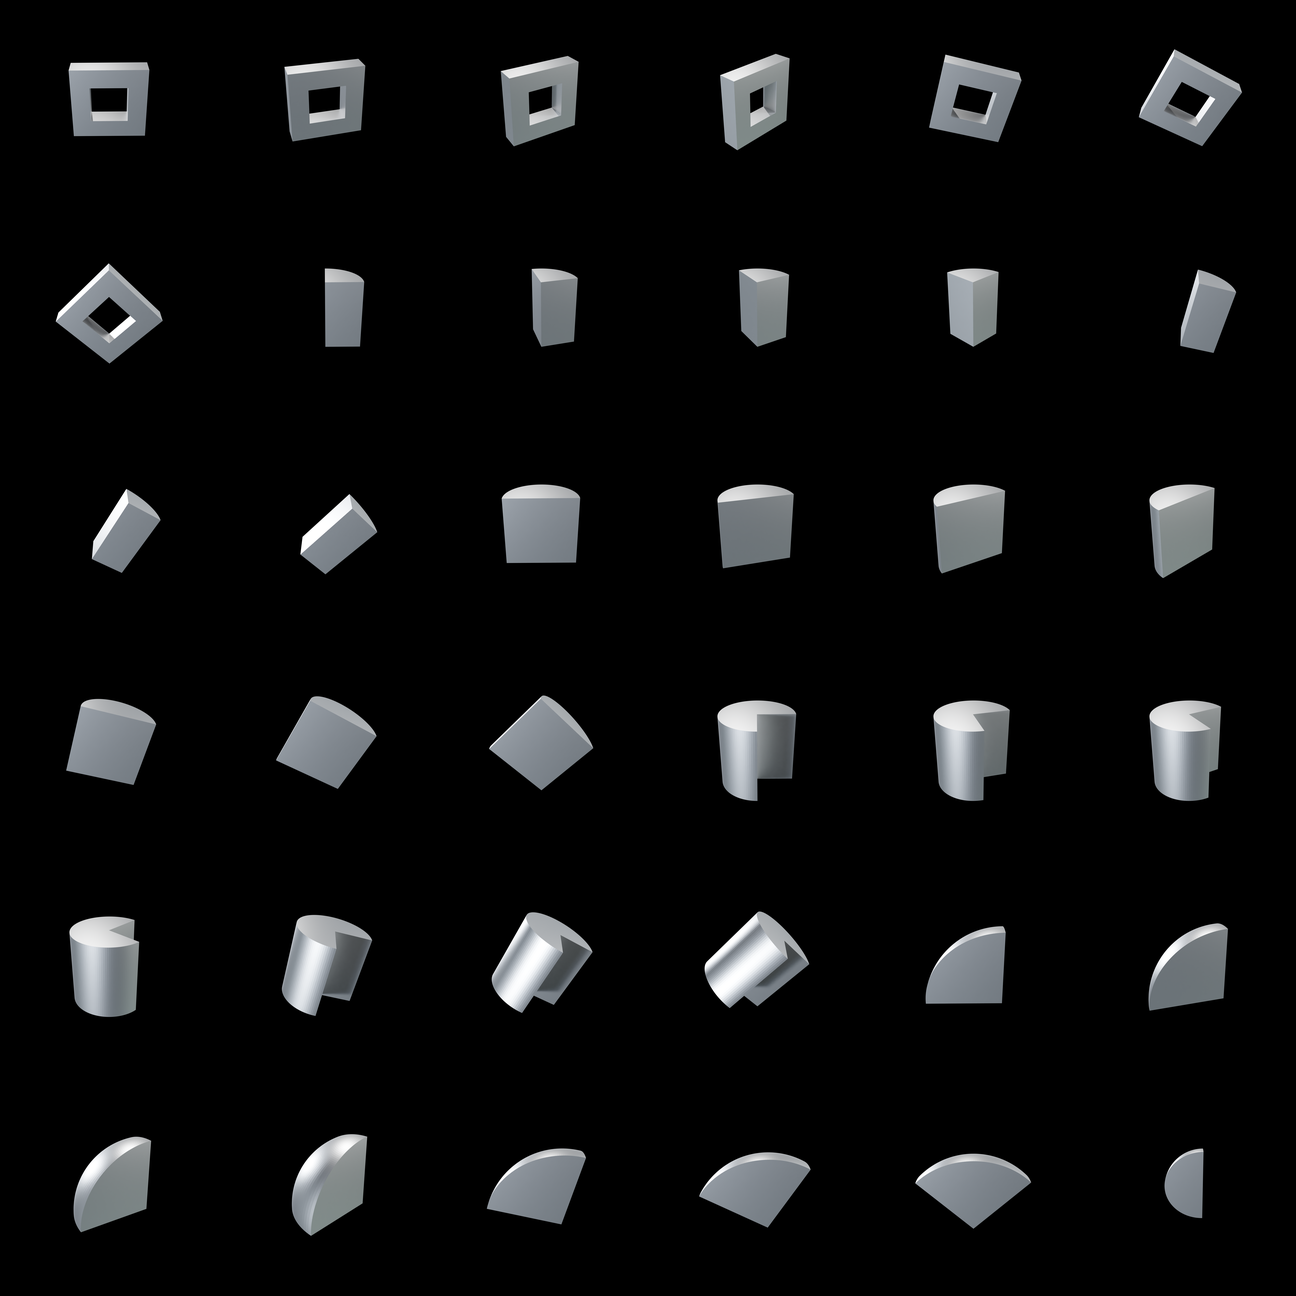 The Bundle - m.cloudy/x tile image 1